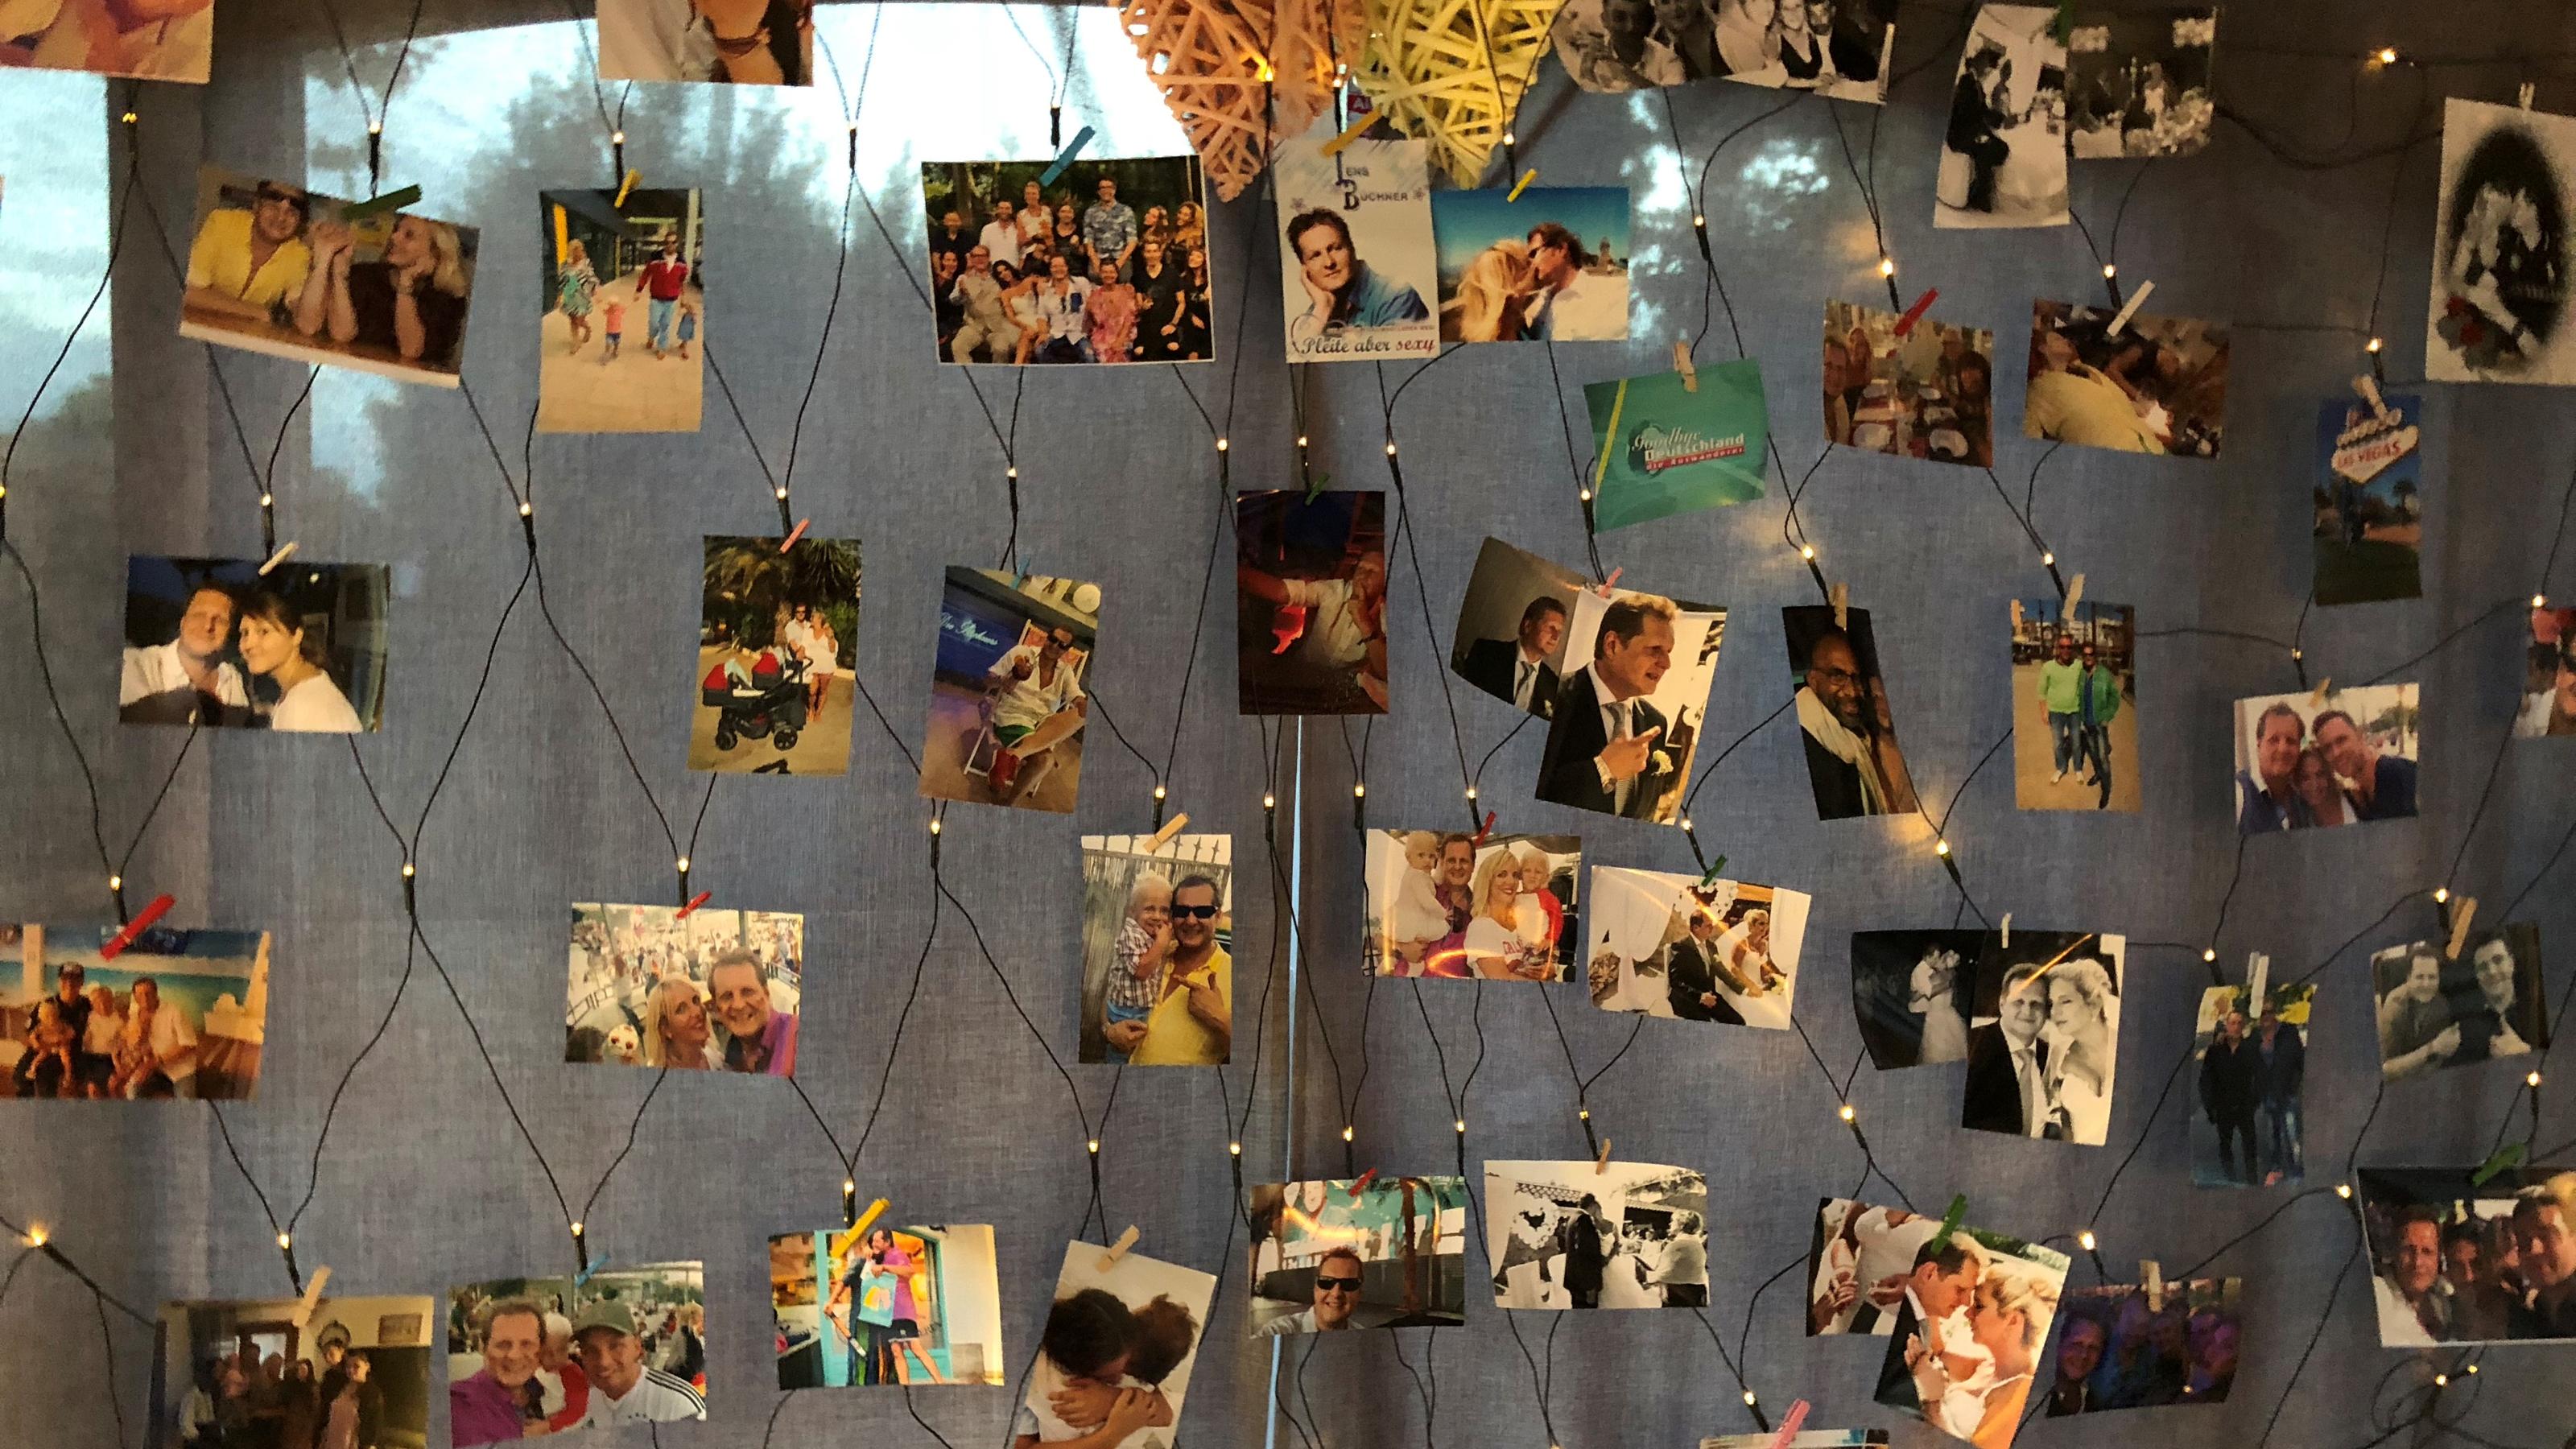 An einem großen Vorhang hat die Familie von Jens Büchner Fotos von Jens und seinen Freunden aufgehängt.